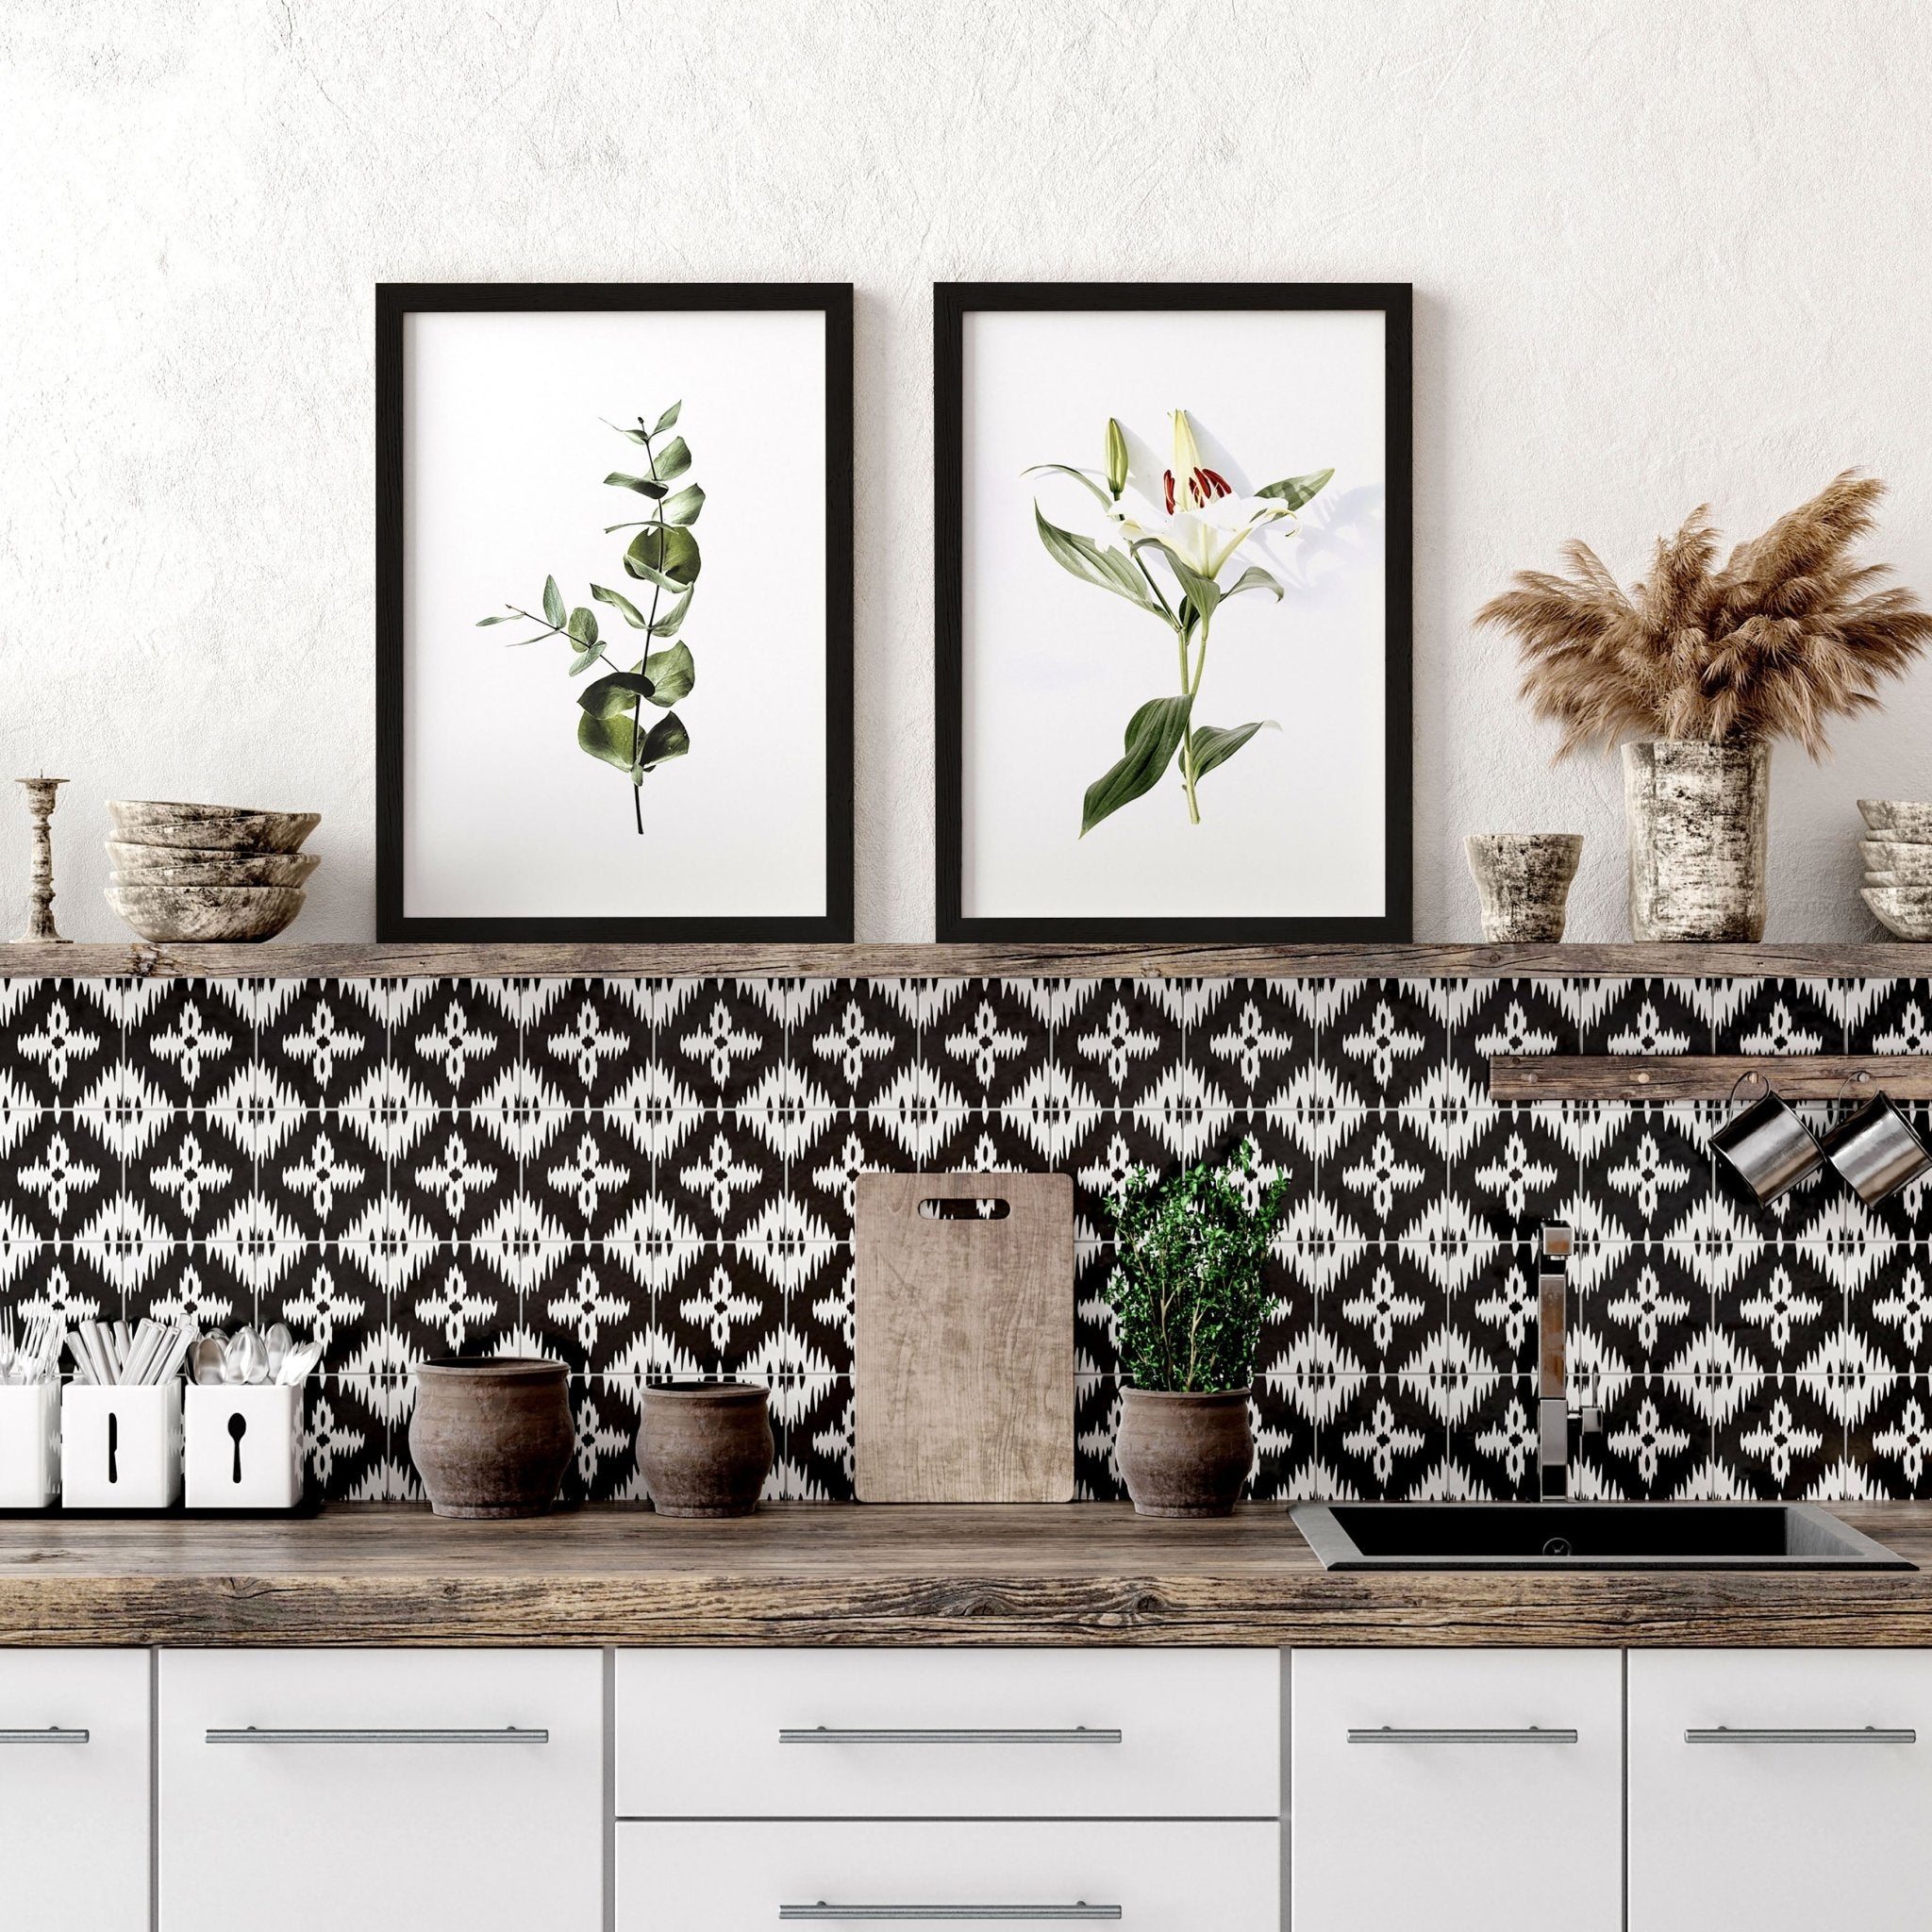 Juego enmarcado Shabby Chic de 2 impresiones de arte de pared para la decoración de la cocina y el comedor, juego de impresiones de arte de pared de la galería Botanical Greenery para el nuevo hogar